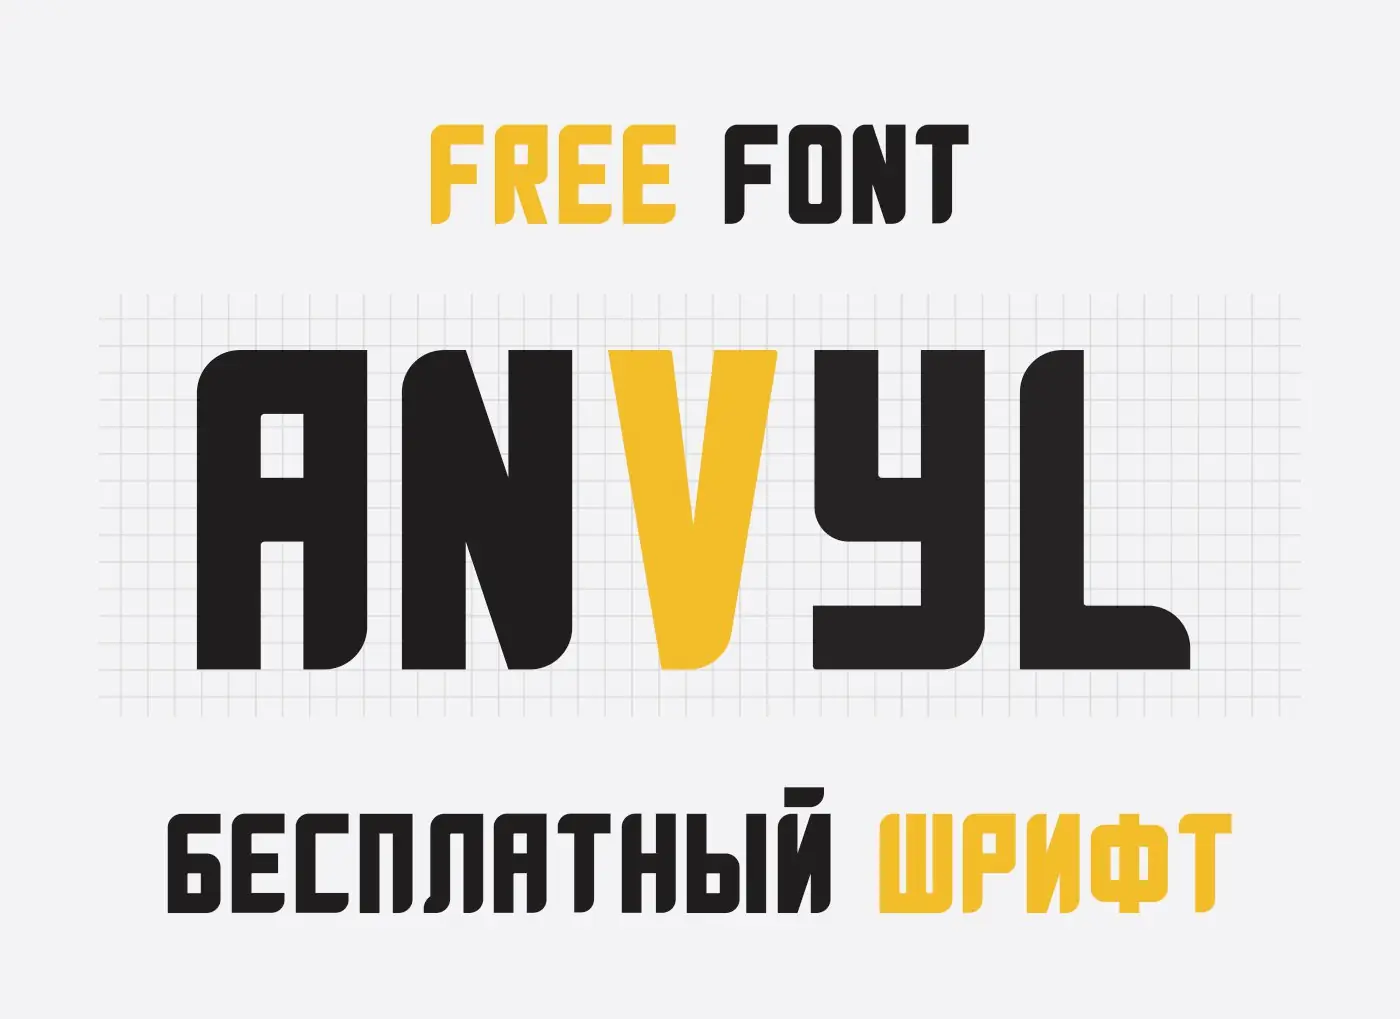 Шрифт ANVYL Cyrillic